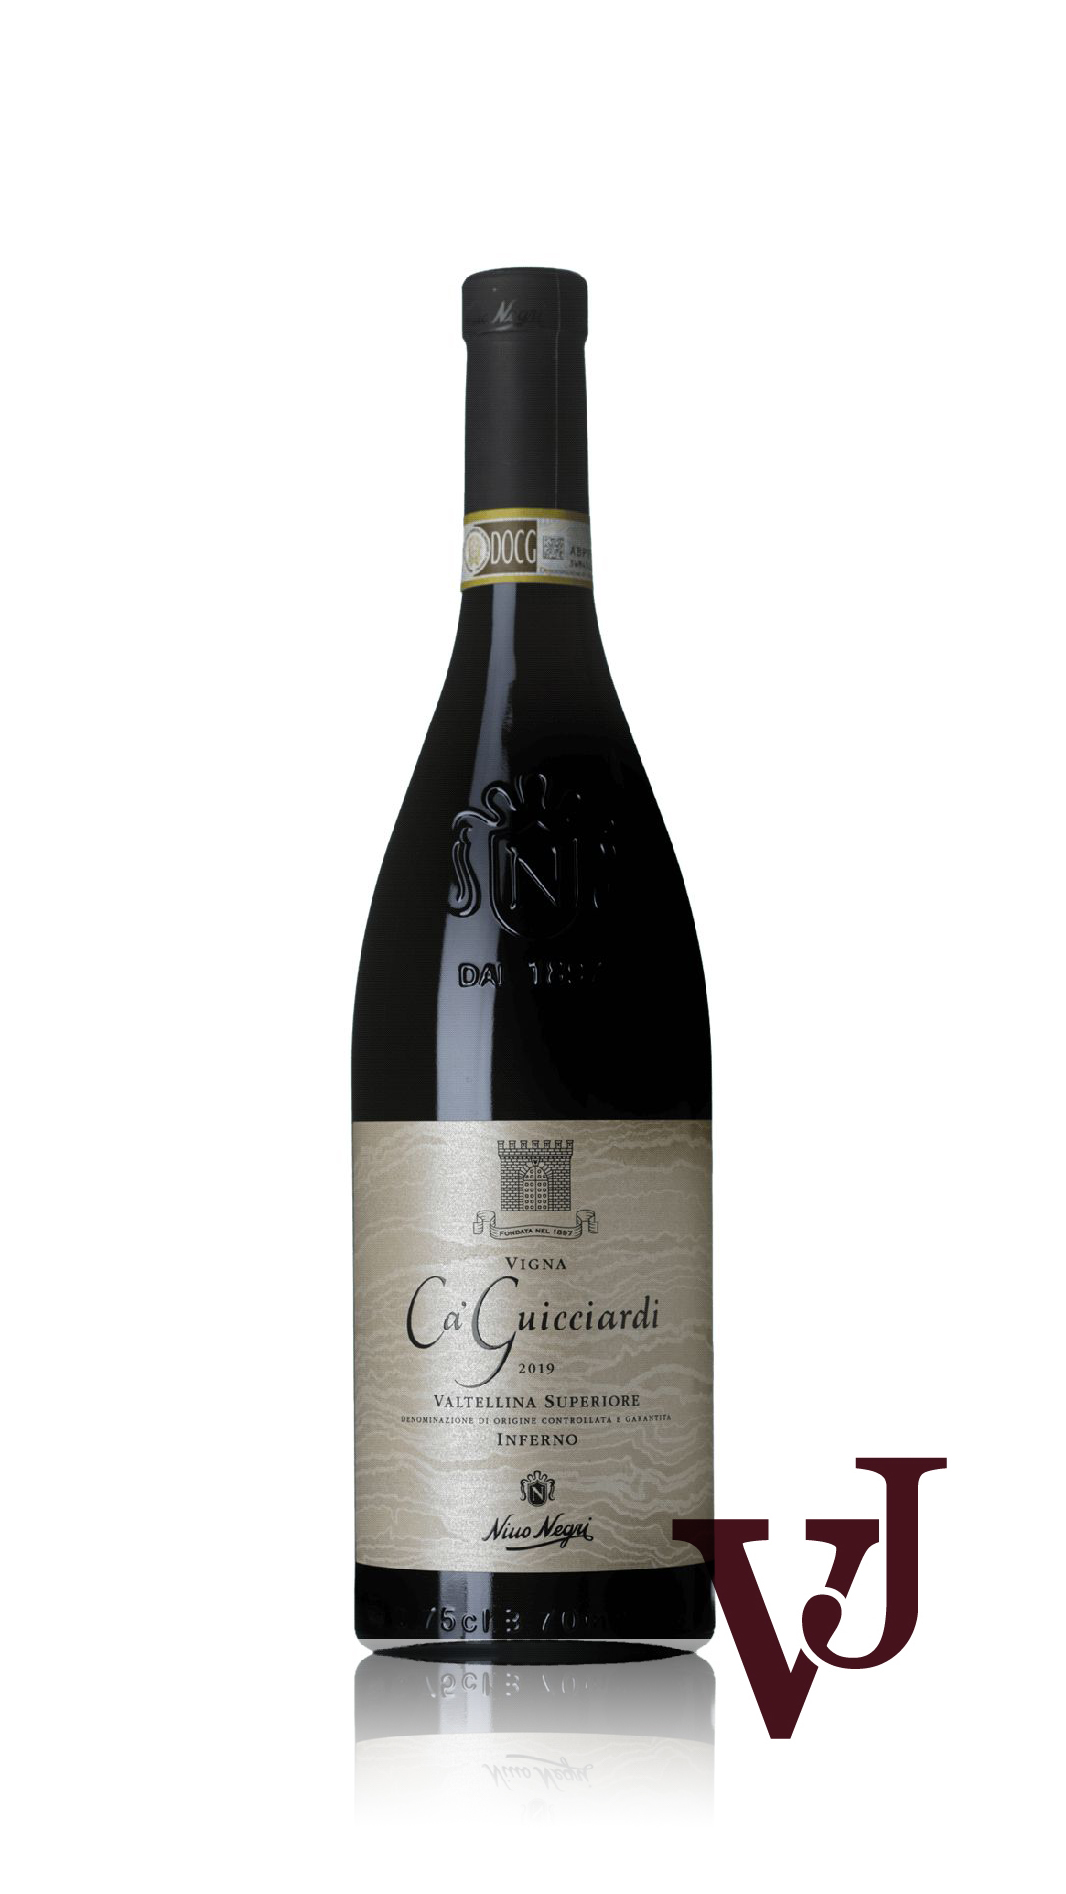 Rött Vin - Vigna Ca' Guicciardi Nino Negri 2019 artikel nummer 9231601 från producenten Nino Negri från Italien